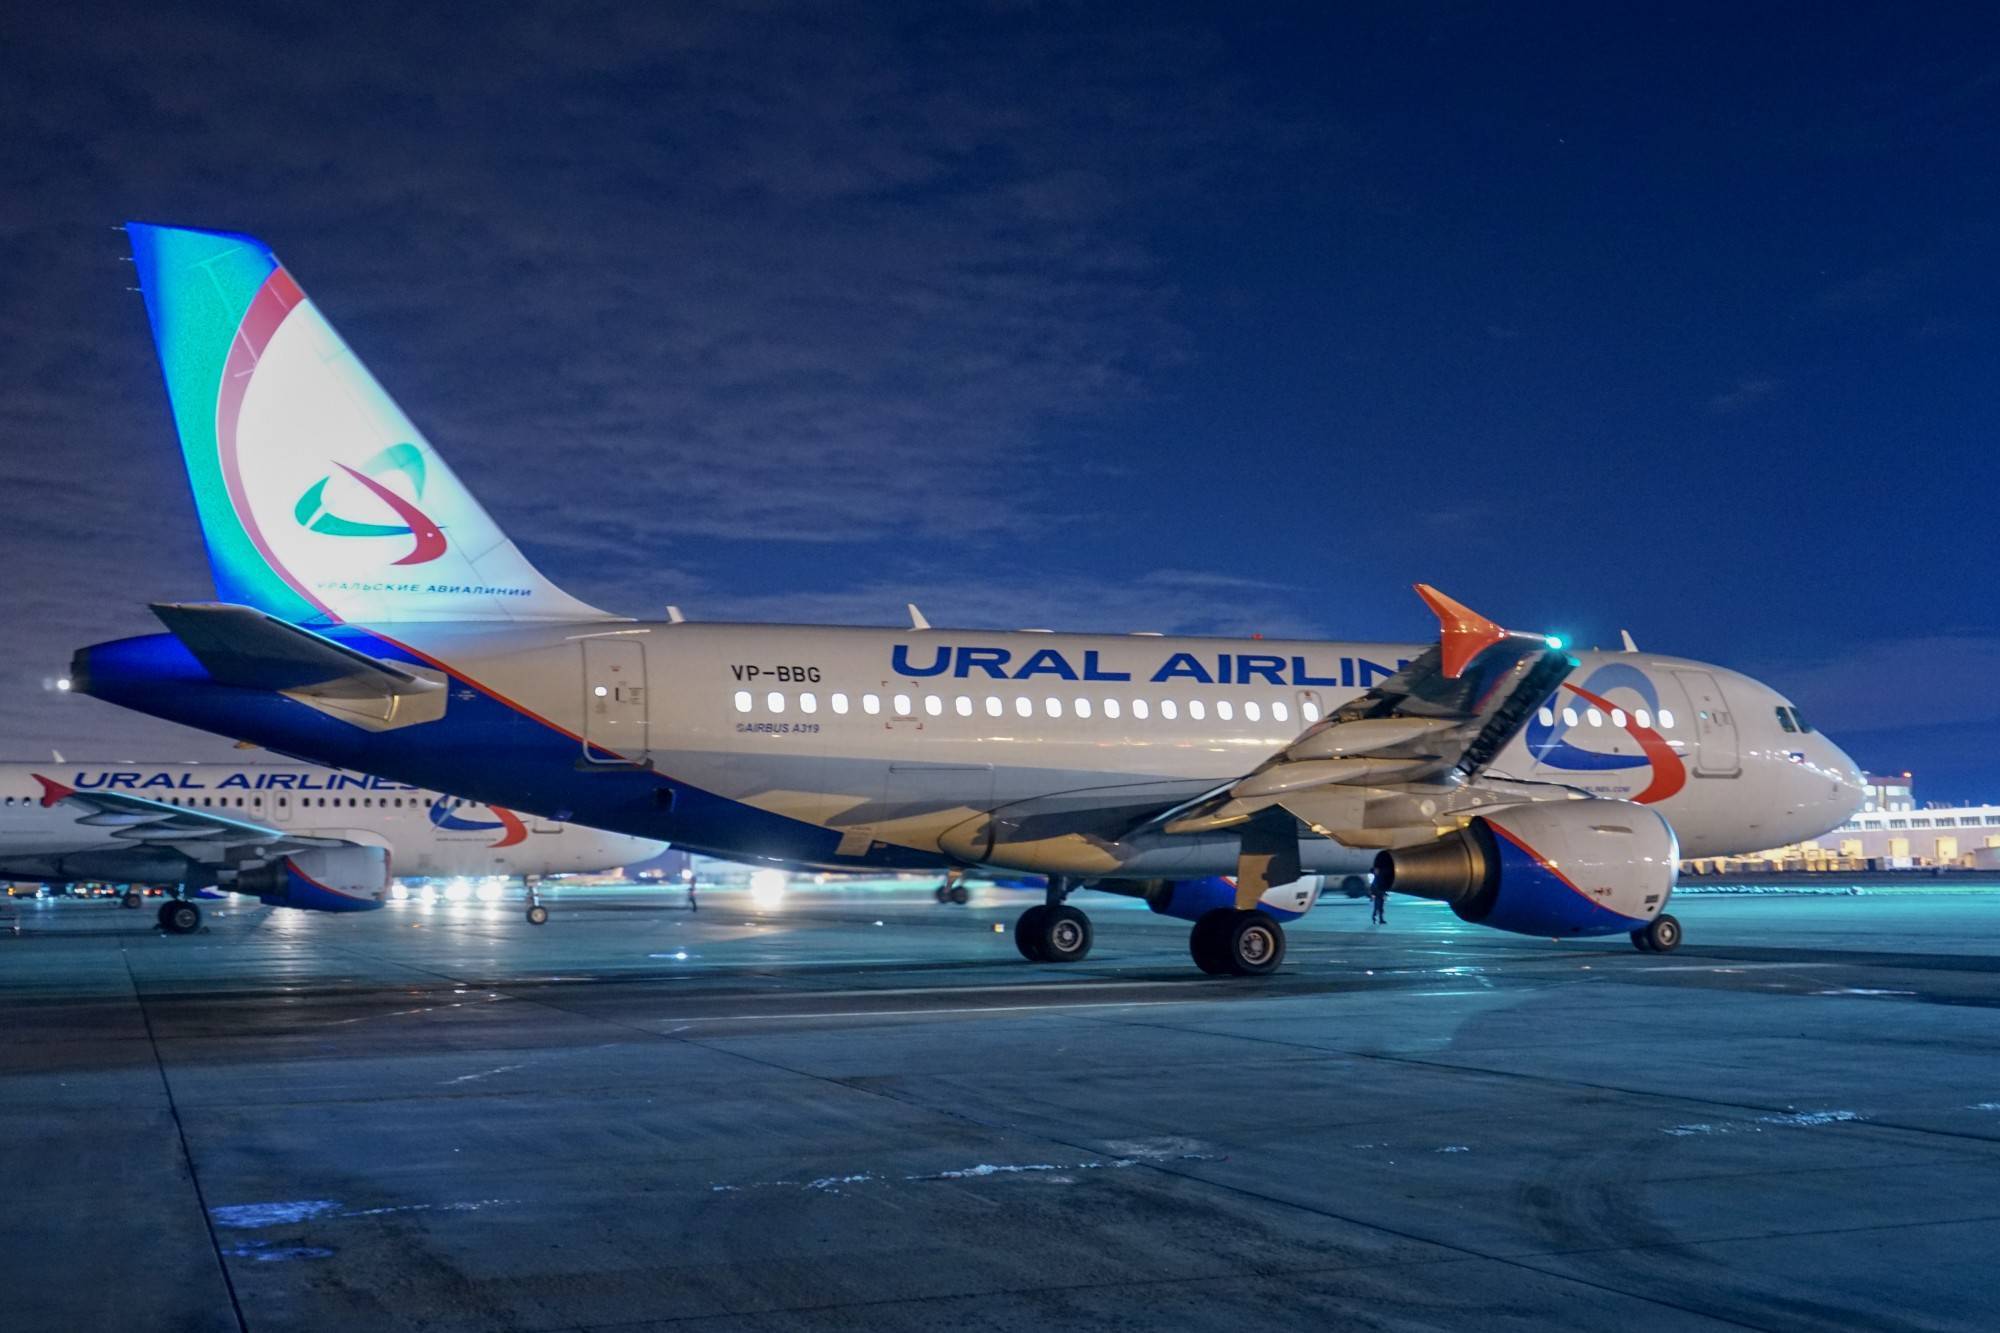 Ural airlines (уральские авиалинии)